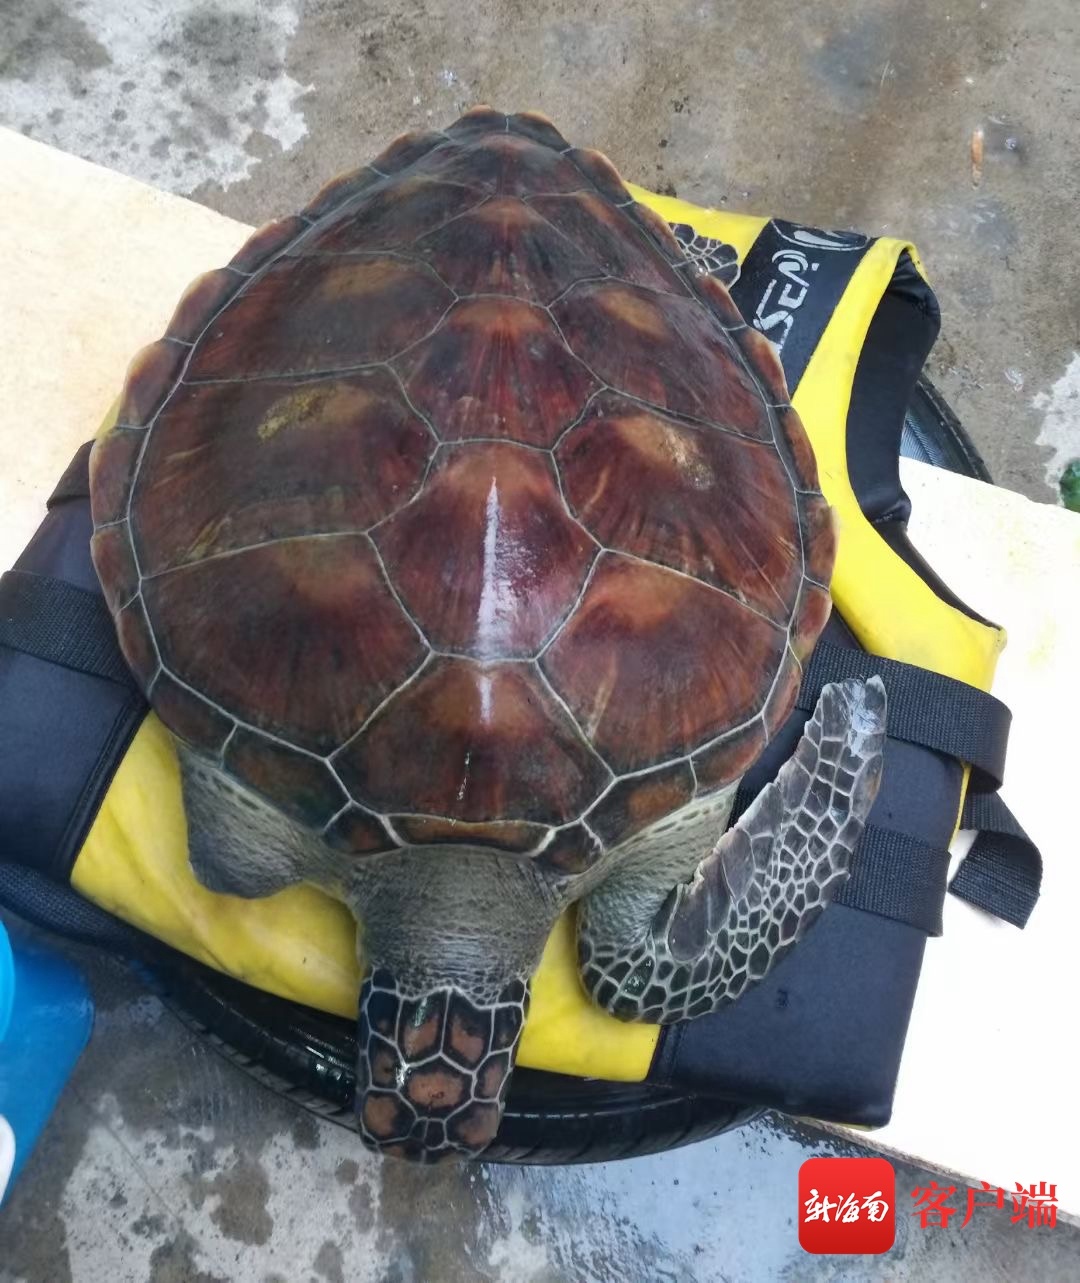 海口警民联手救助受伤海龟“十三麟”